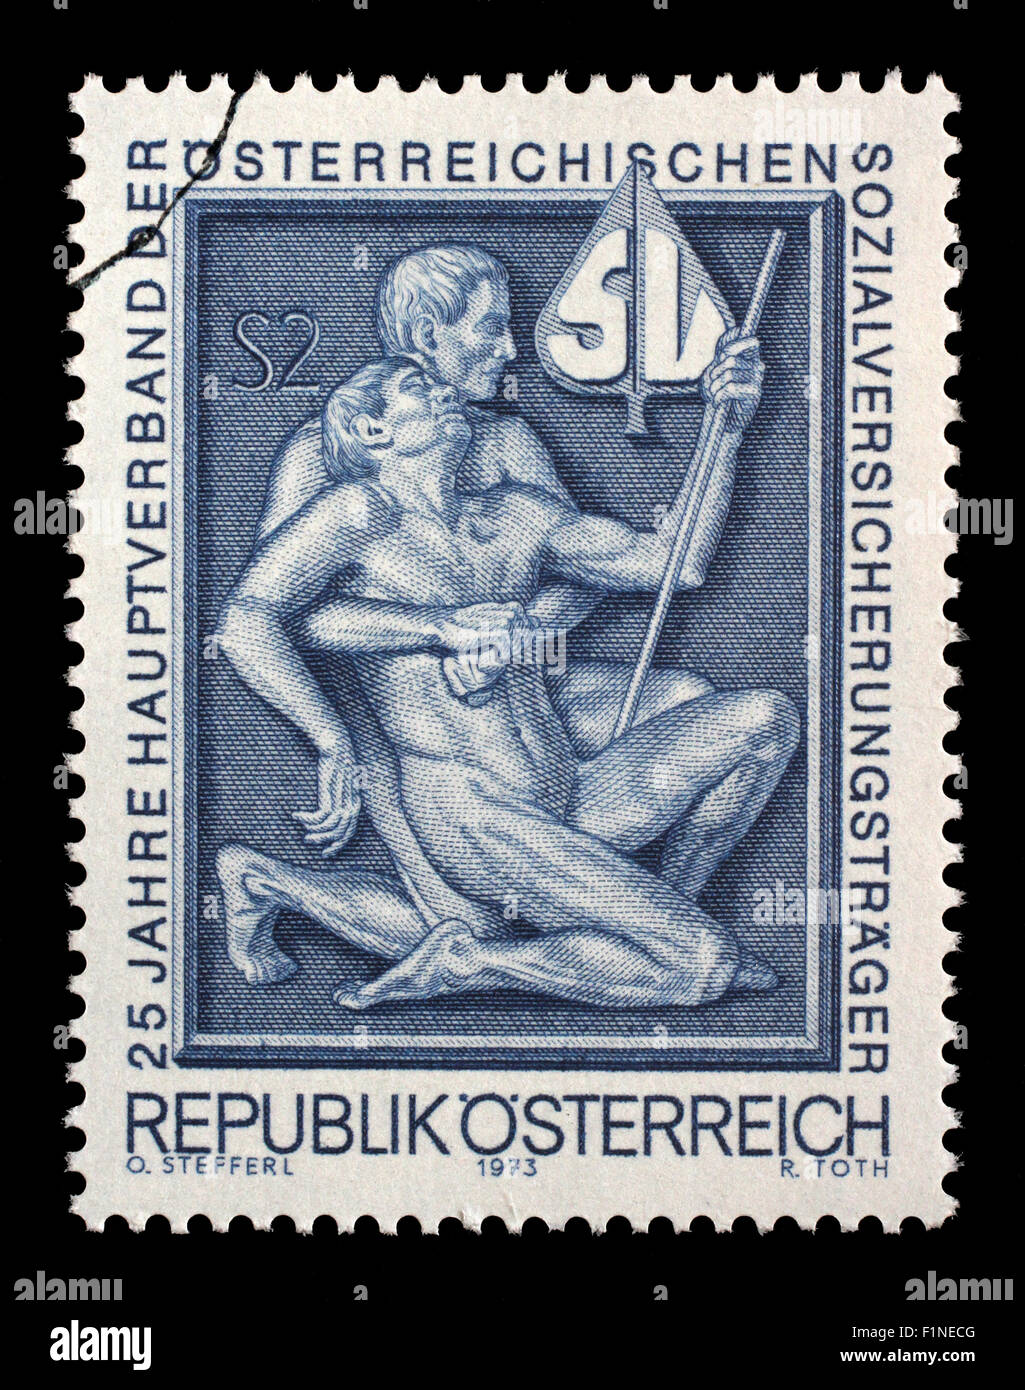 Timbro stampato da Austria, mostra simbolismo per gli aiuti e il sostegno, circa 1973 Foto Stock